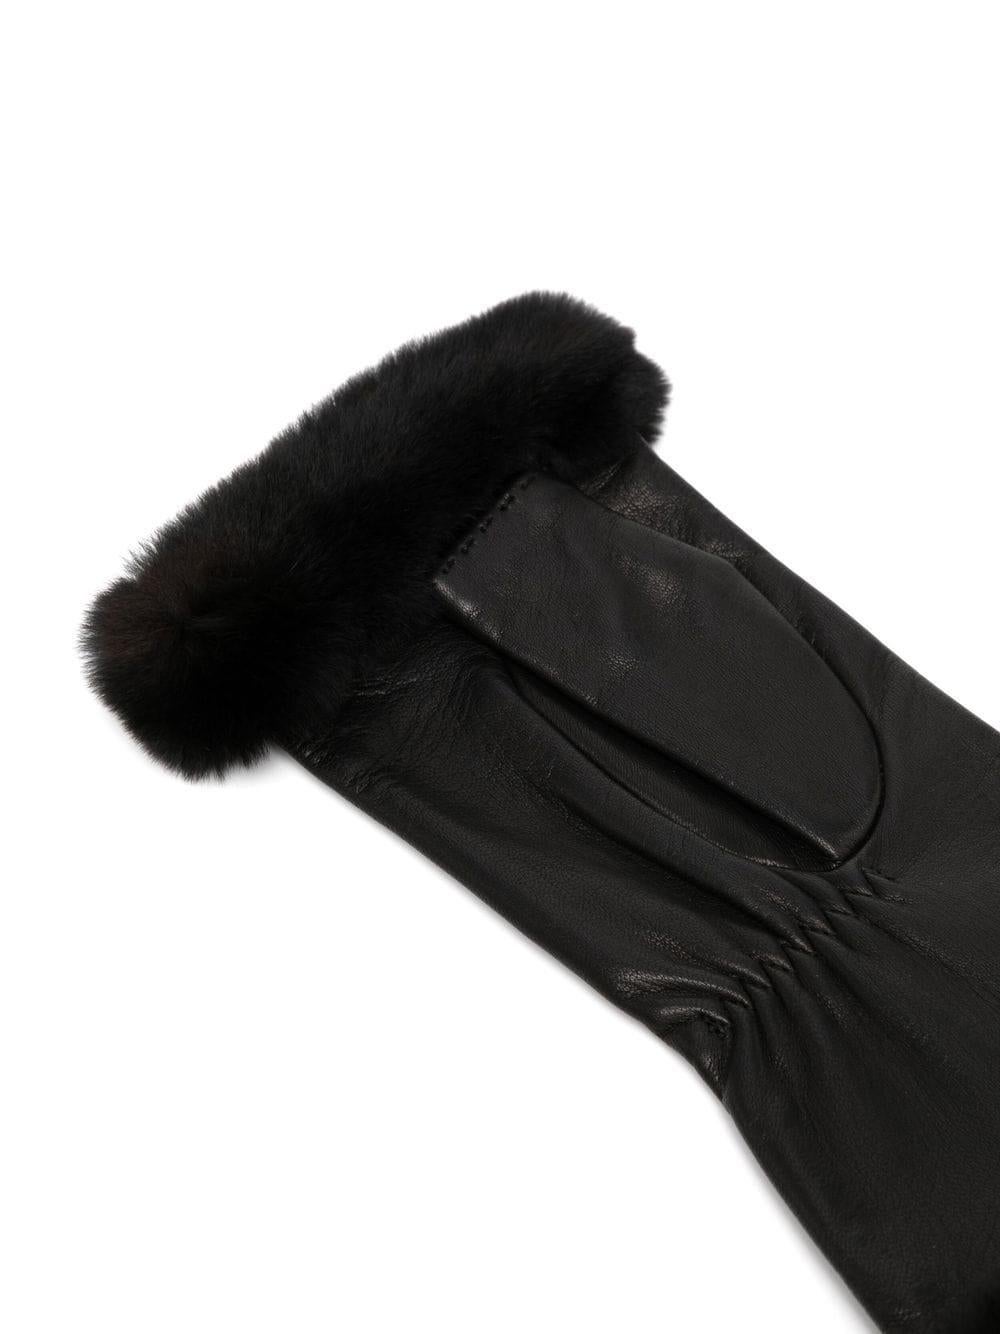 Exsudant le luxe sans effort de Hermes, cette paire de gants d'occasion est à la fois élégante et intemporelle. Confectionnés à la main dans un cuir lisse et doux au toucher, ces accessoires originaux présentent un extérieur noir avec des garnitures